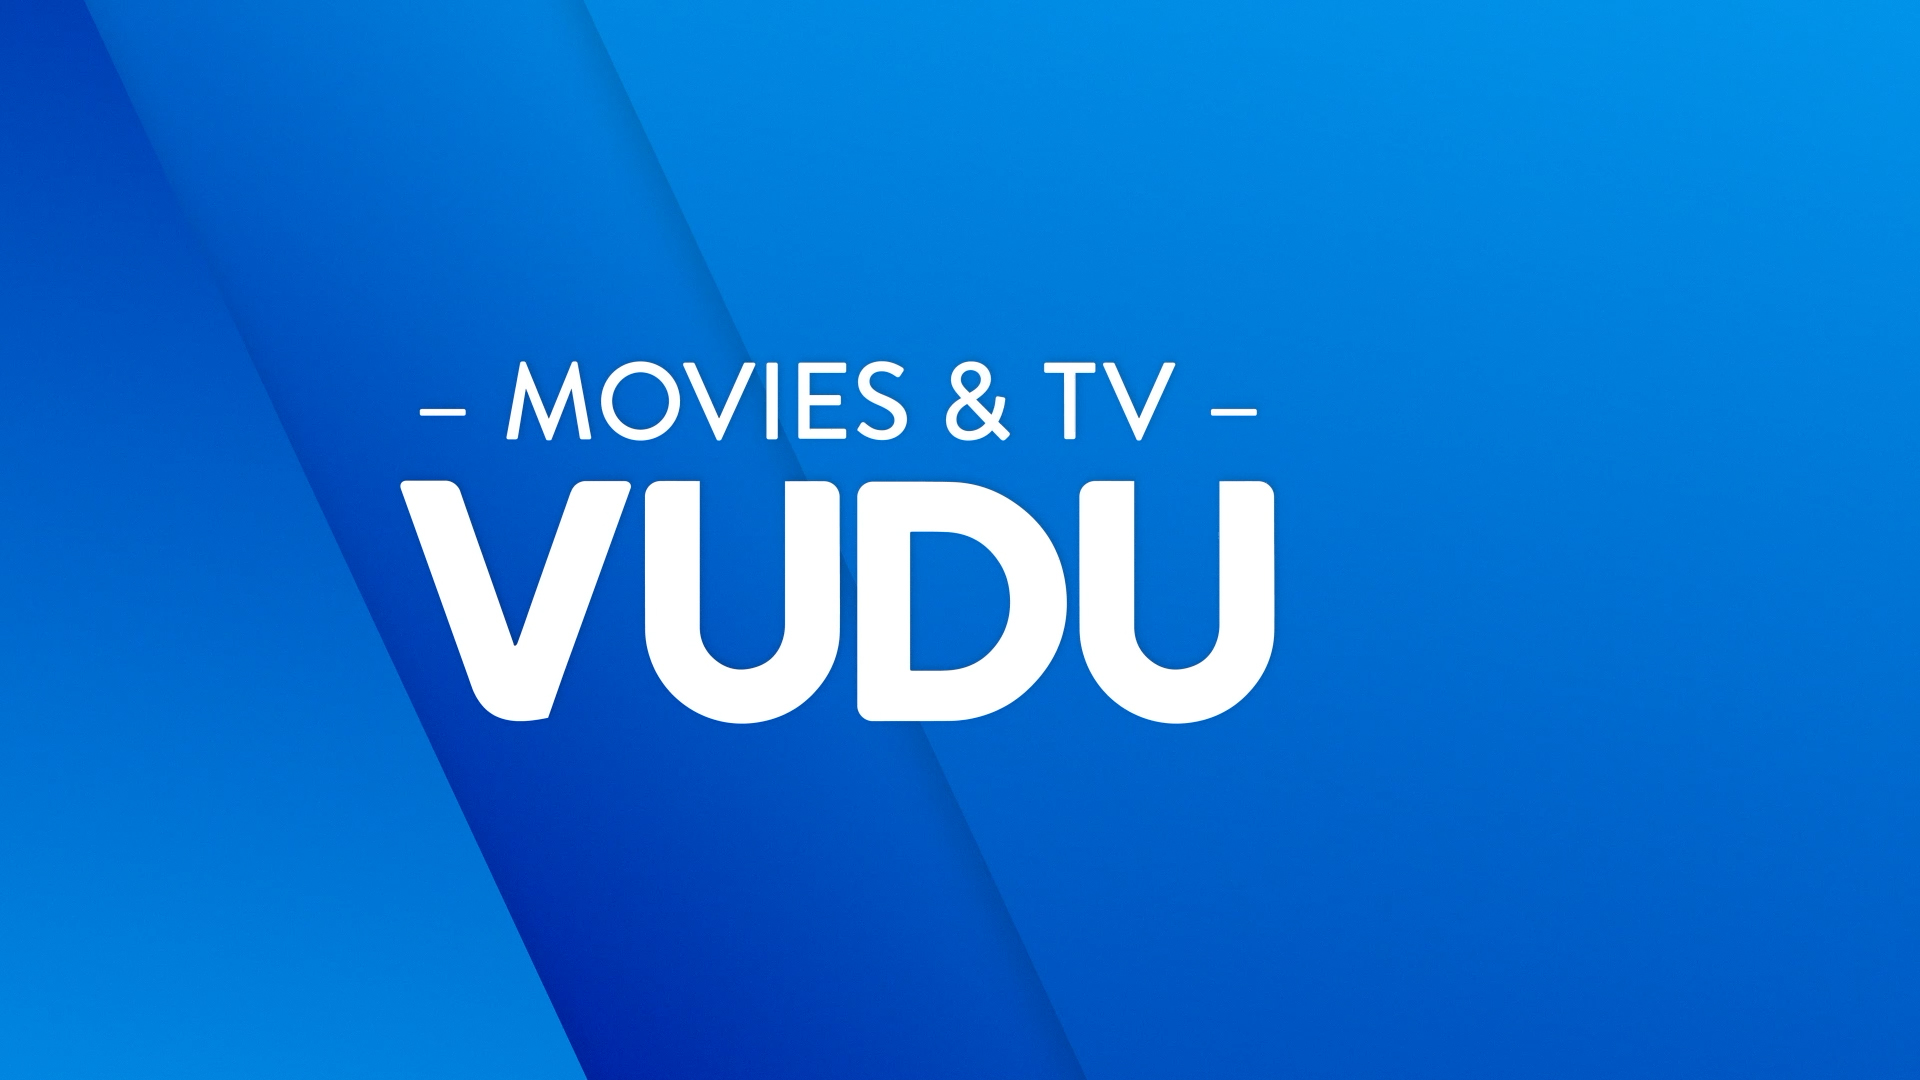 Vudu  Launches on Xfinity X1 and Xfinity Flex